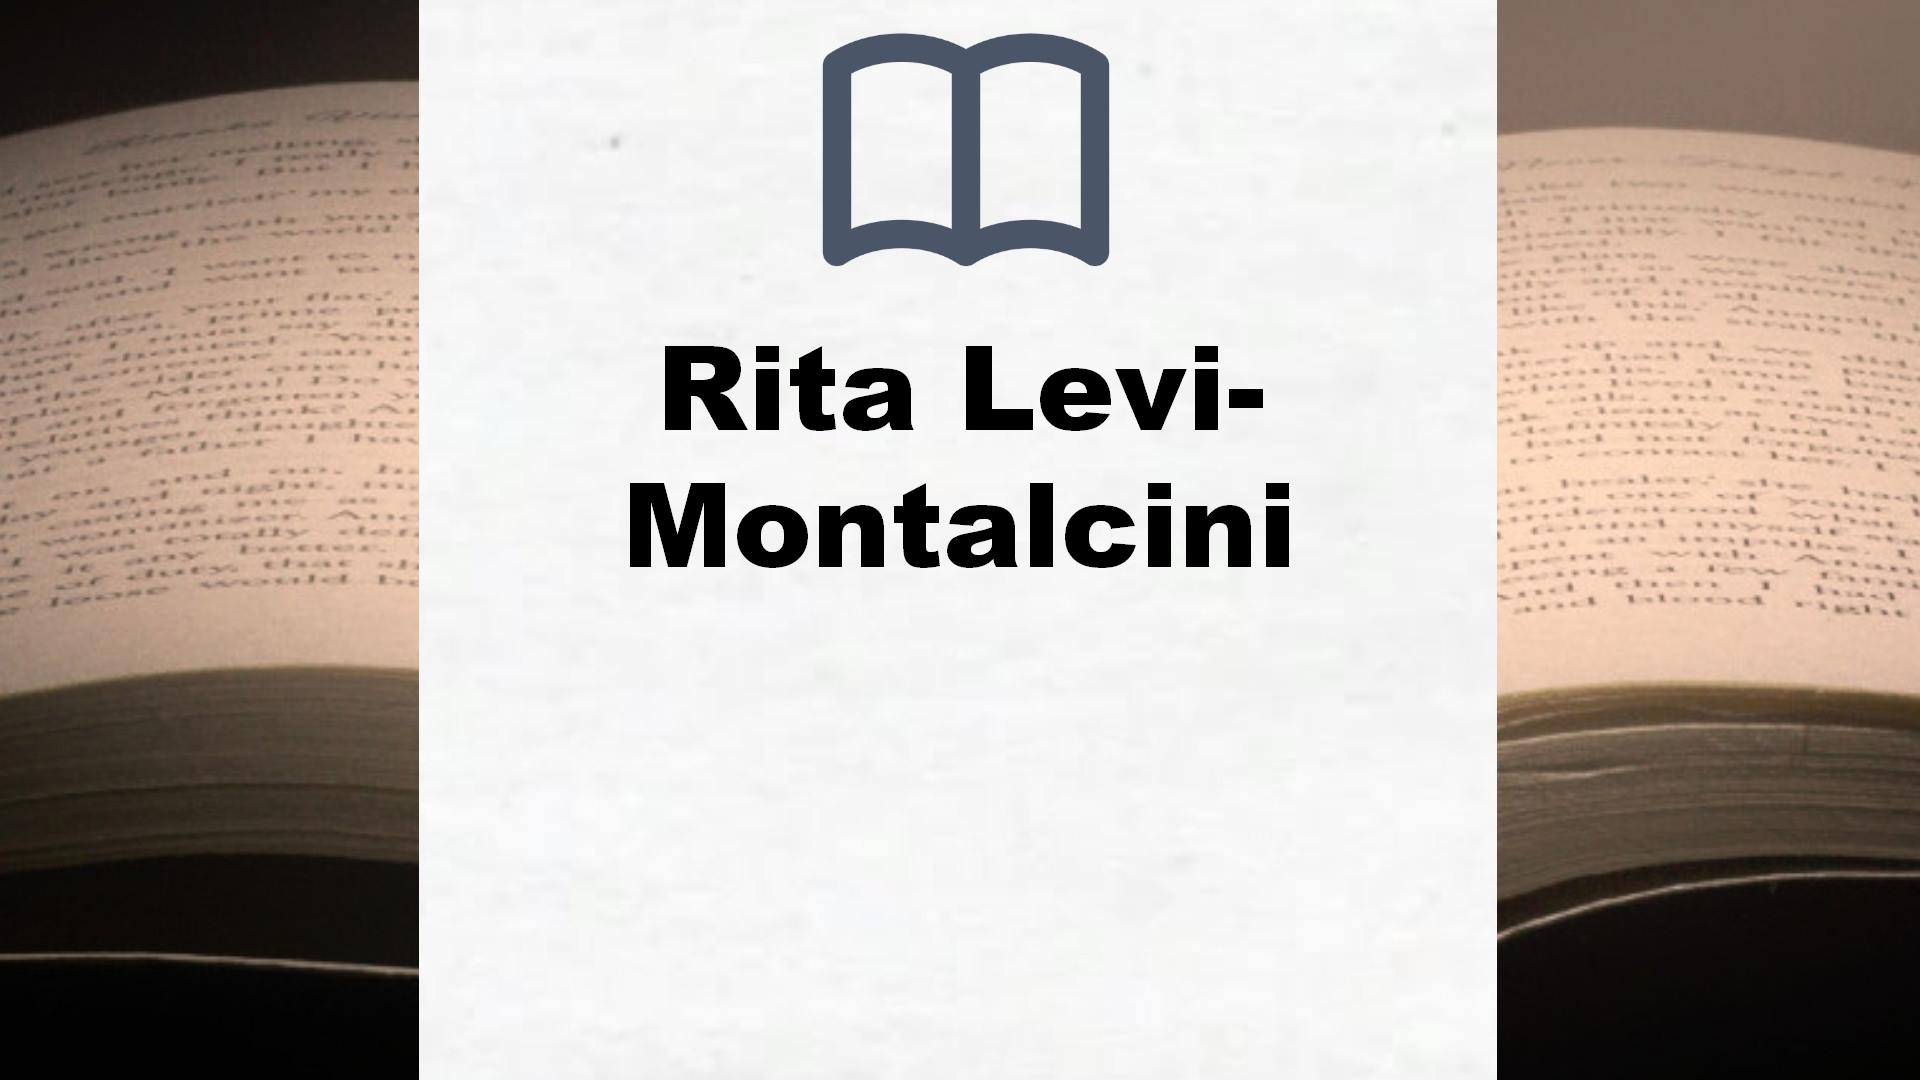 Libros Rita Levi-Montalcini